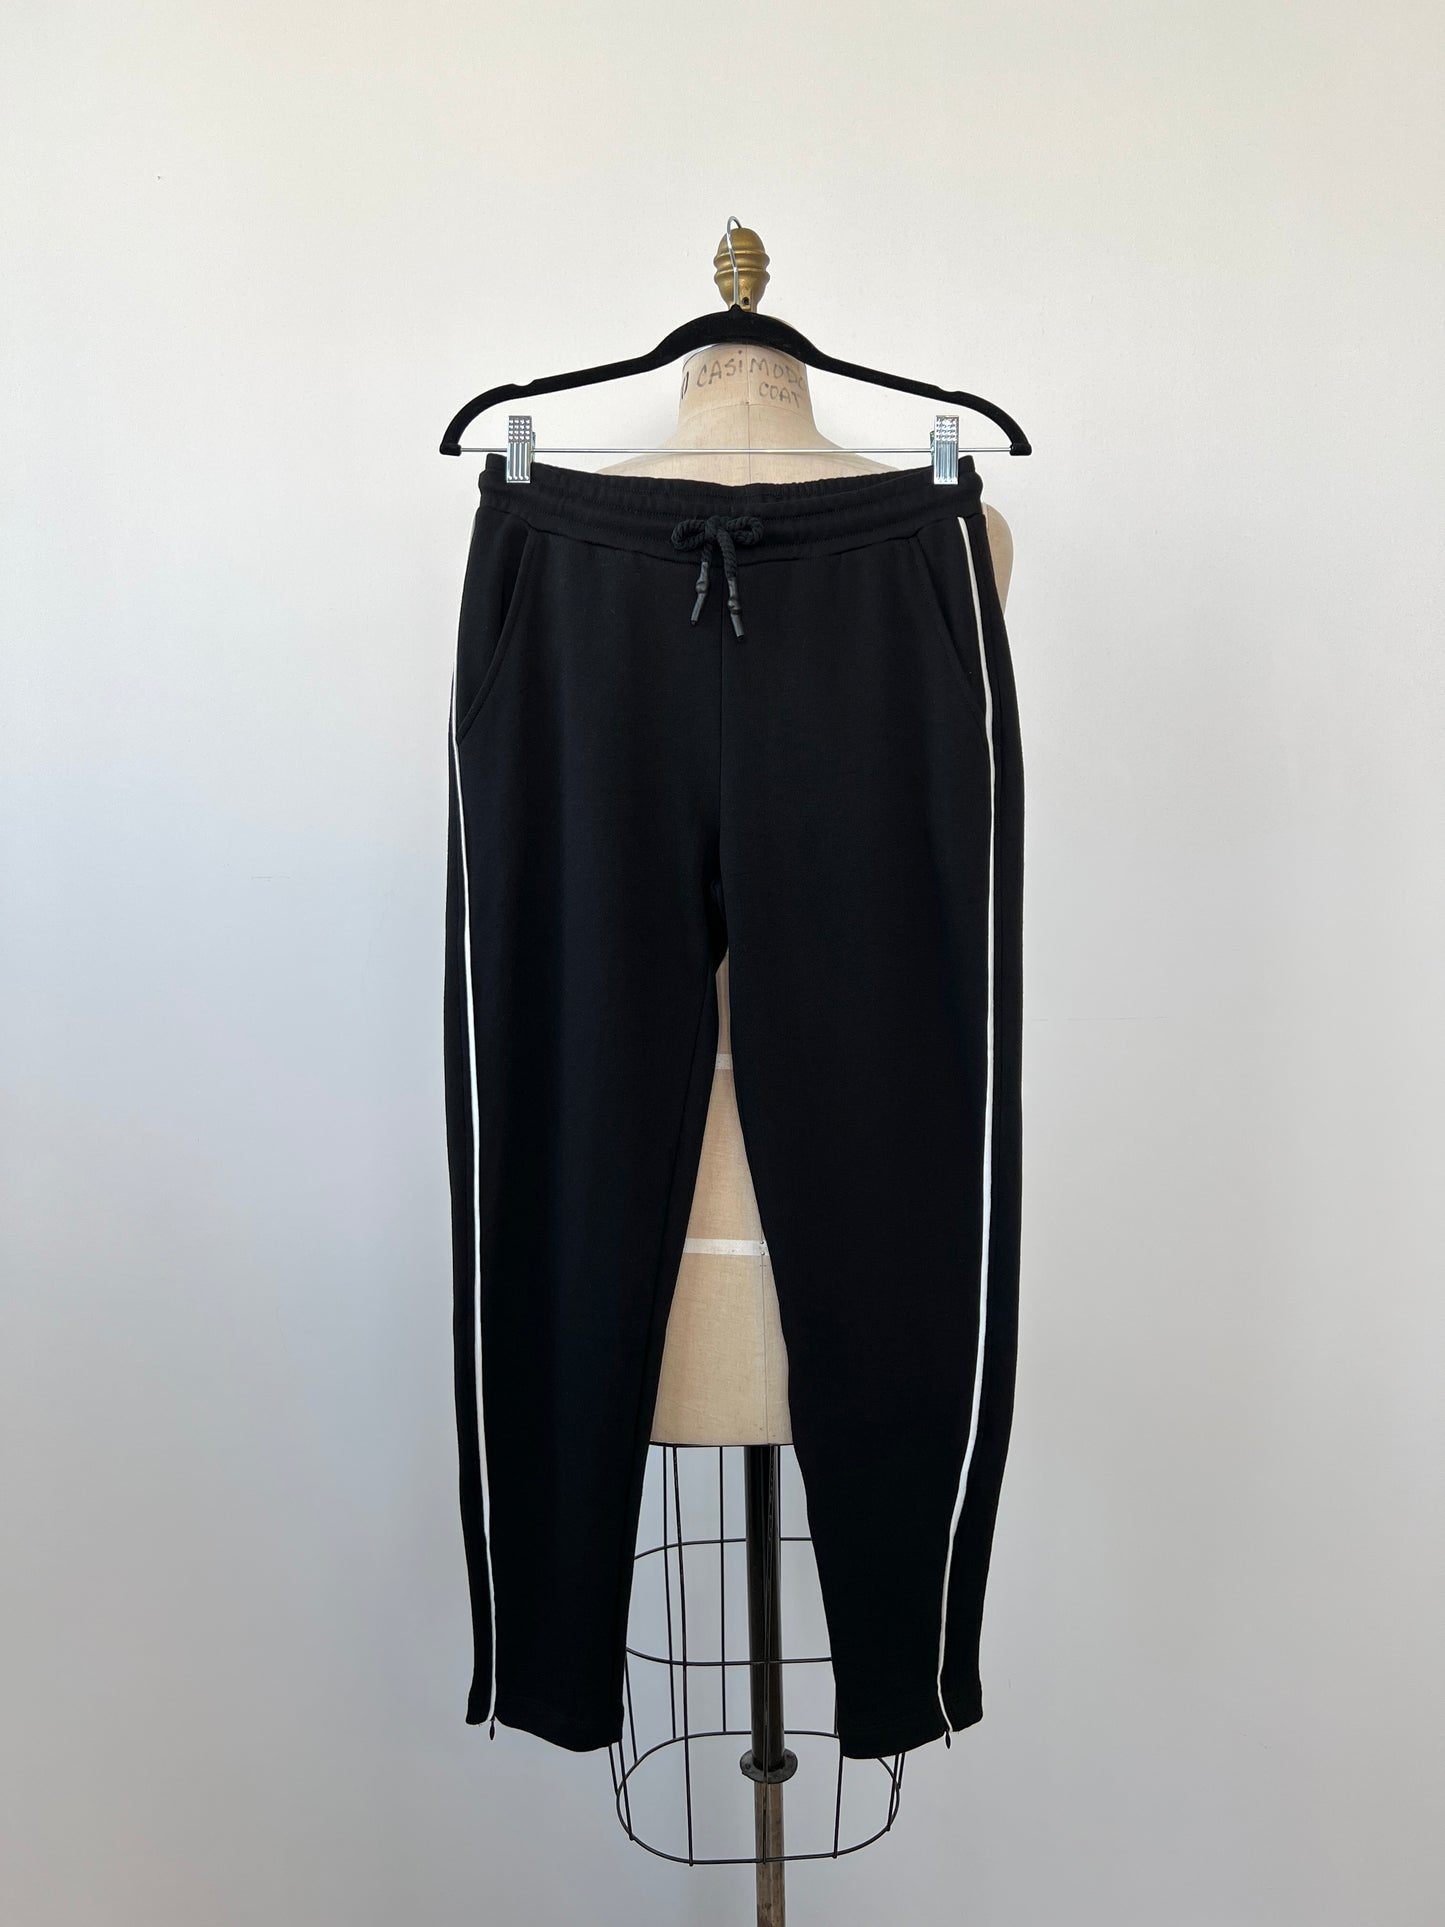 Pantalon jogger noir à galons blancs (S)